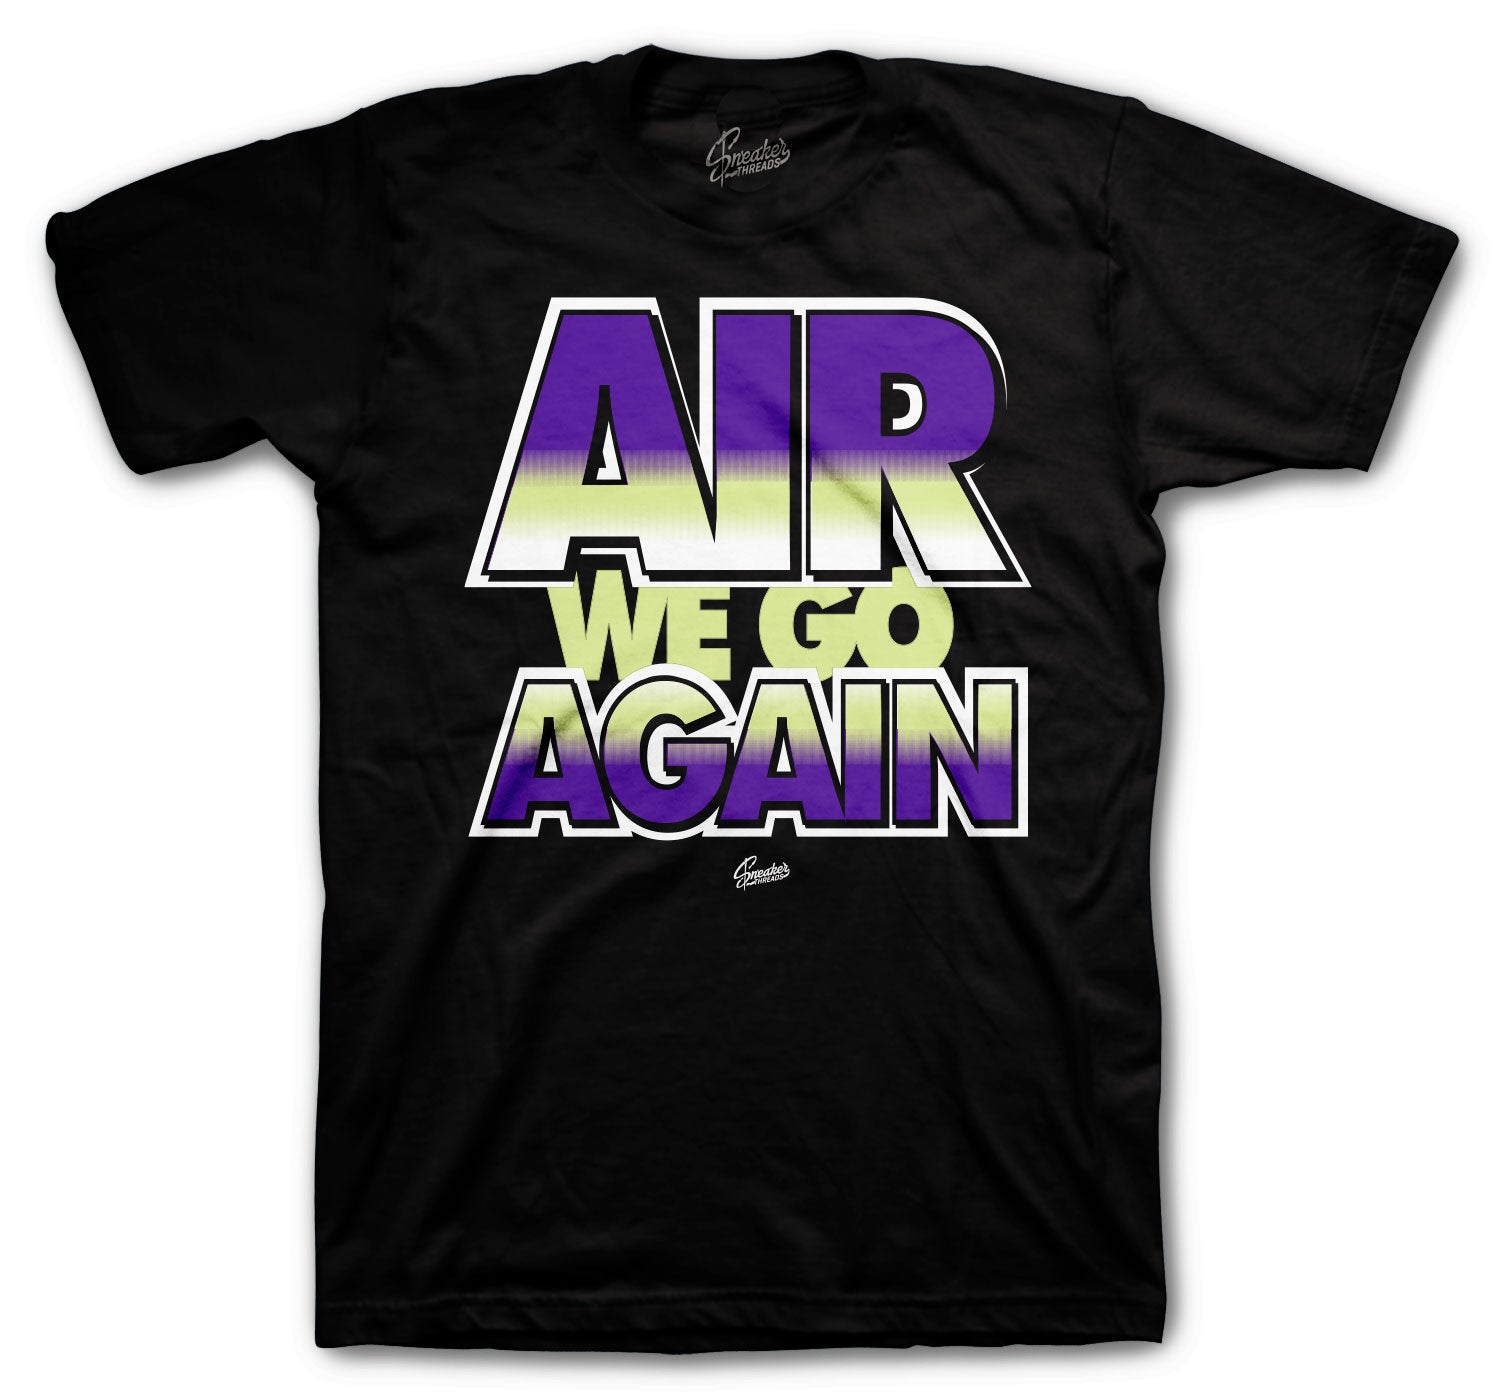 purple air max shirt